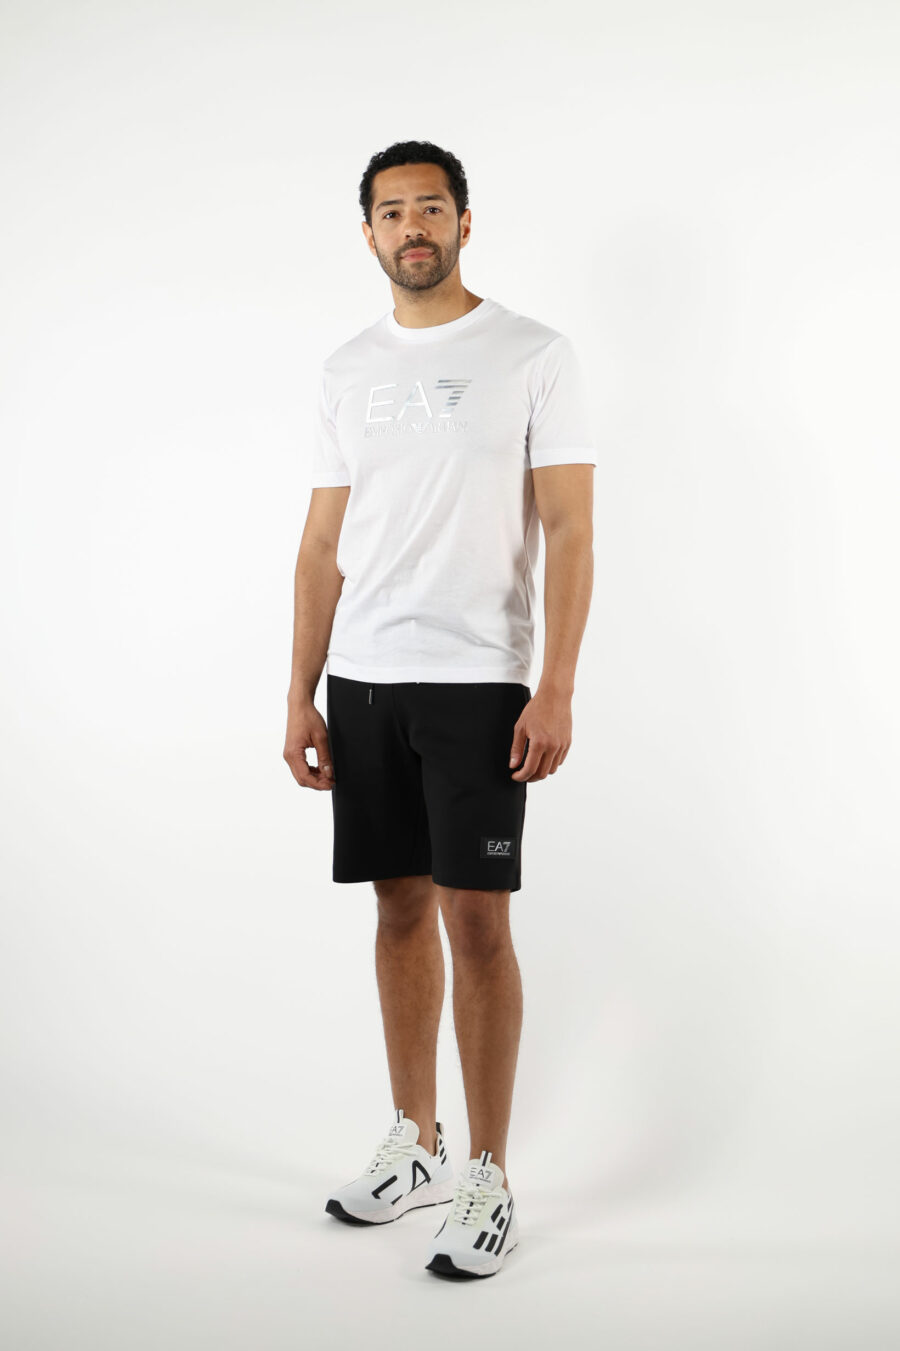 Weißes T-Shirt mit "lux identity" Maxilogo im Farbverlauf - 110857